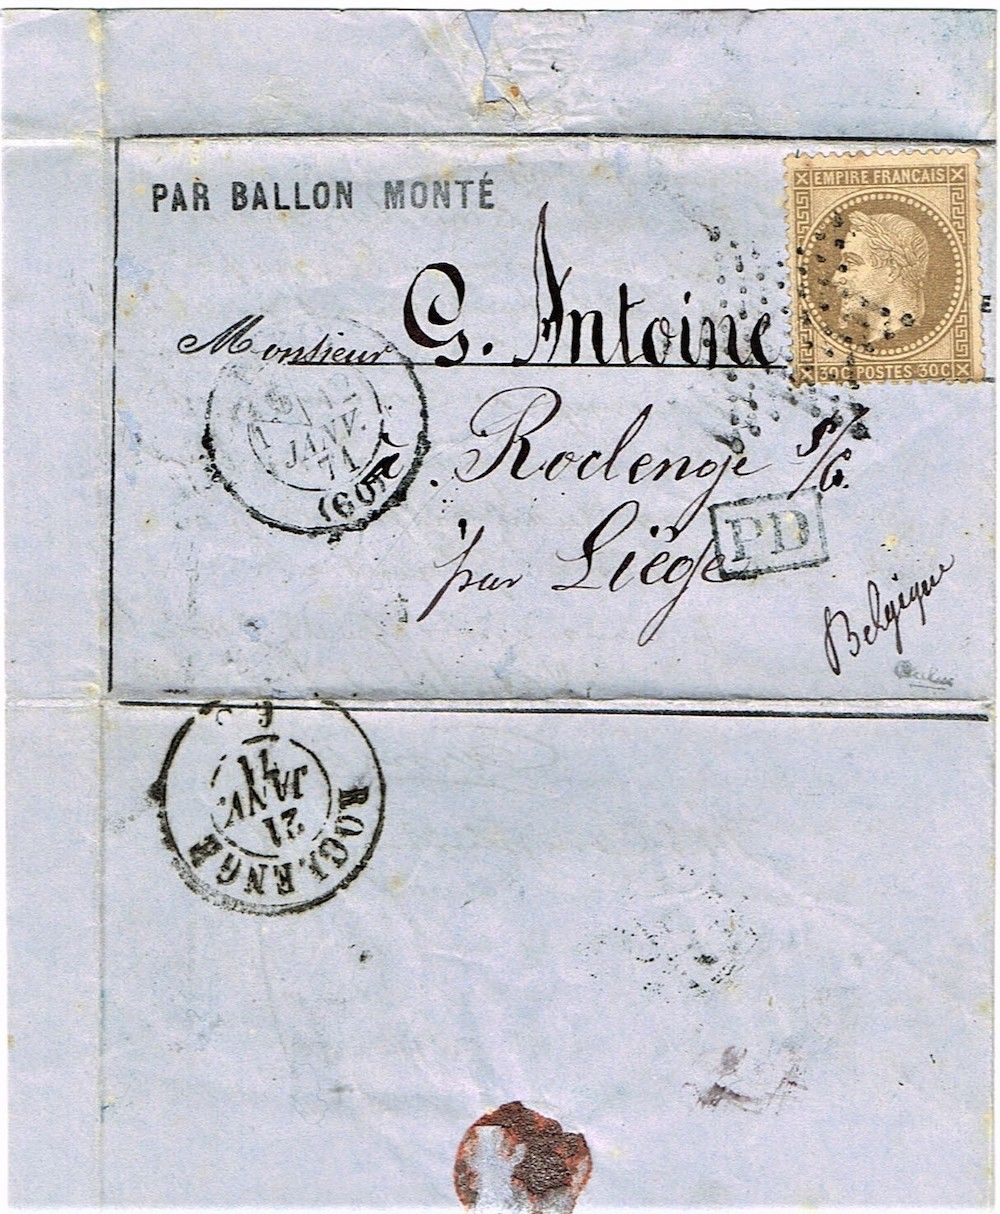 Null 22 - BALLON MONTÉ. 12 de enero de 1871. "General Faidherbe" (probable), lau&hellip;